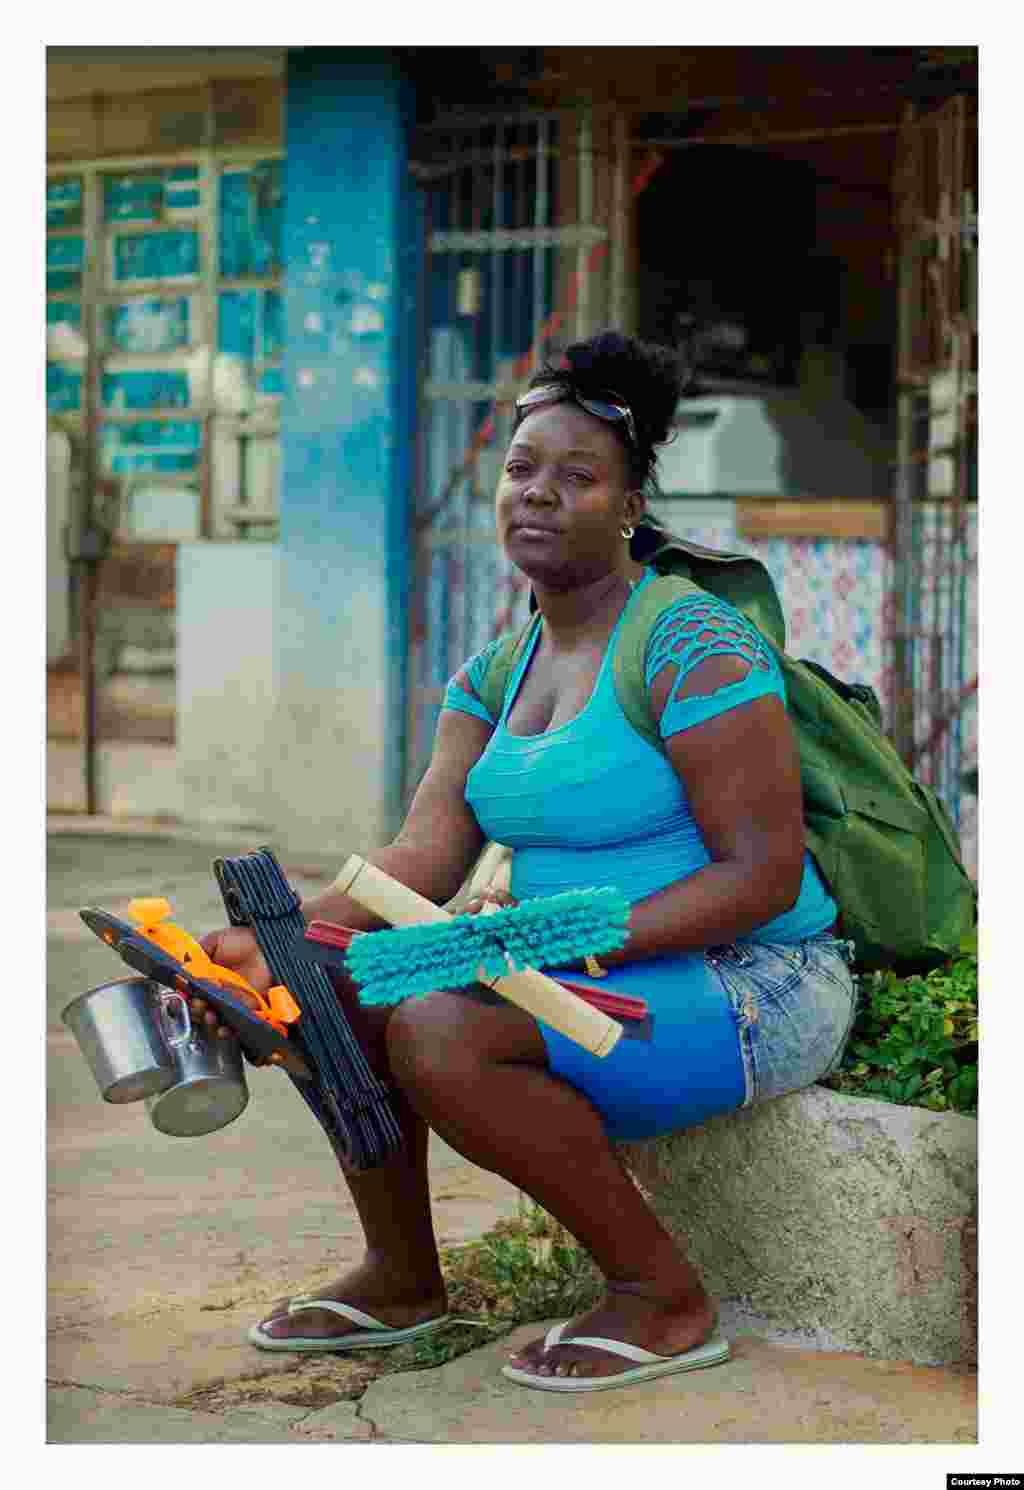 Vendedora ambulante, Cuba. Cortesía de CubaRaw.